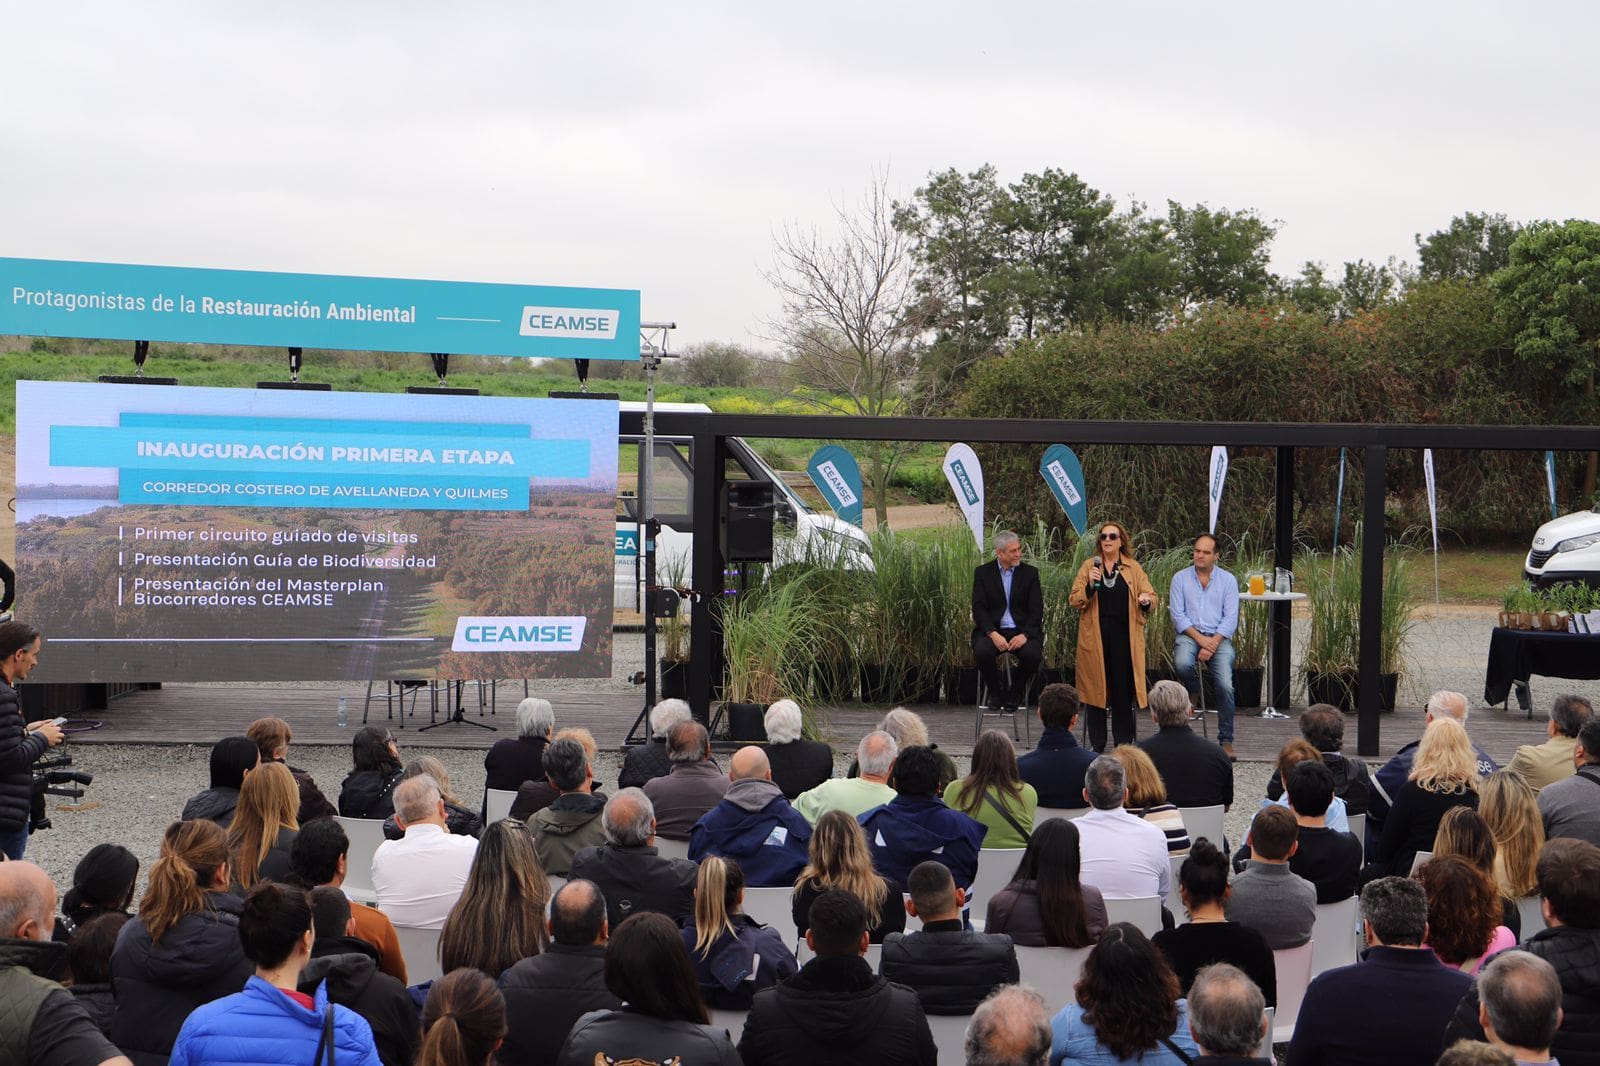 Inauguración de la primera etapa del Parque Metropolitano – Corredor costero Avellaneda y Quilmes.